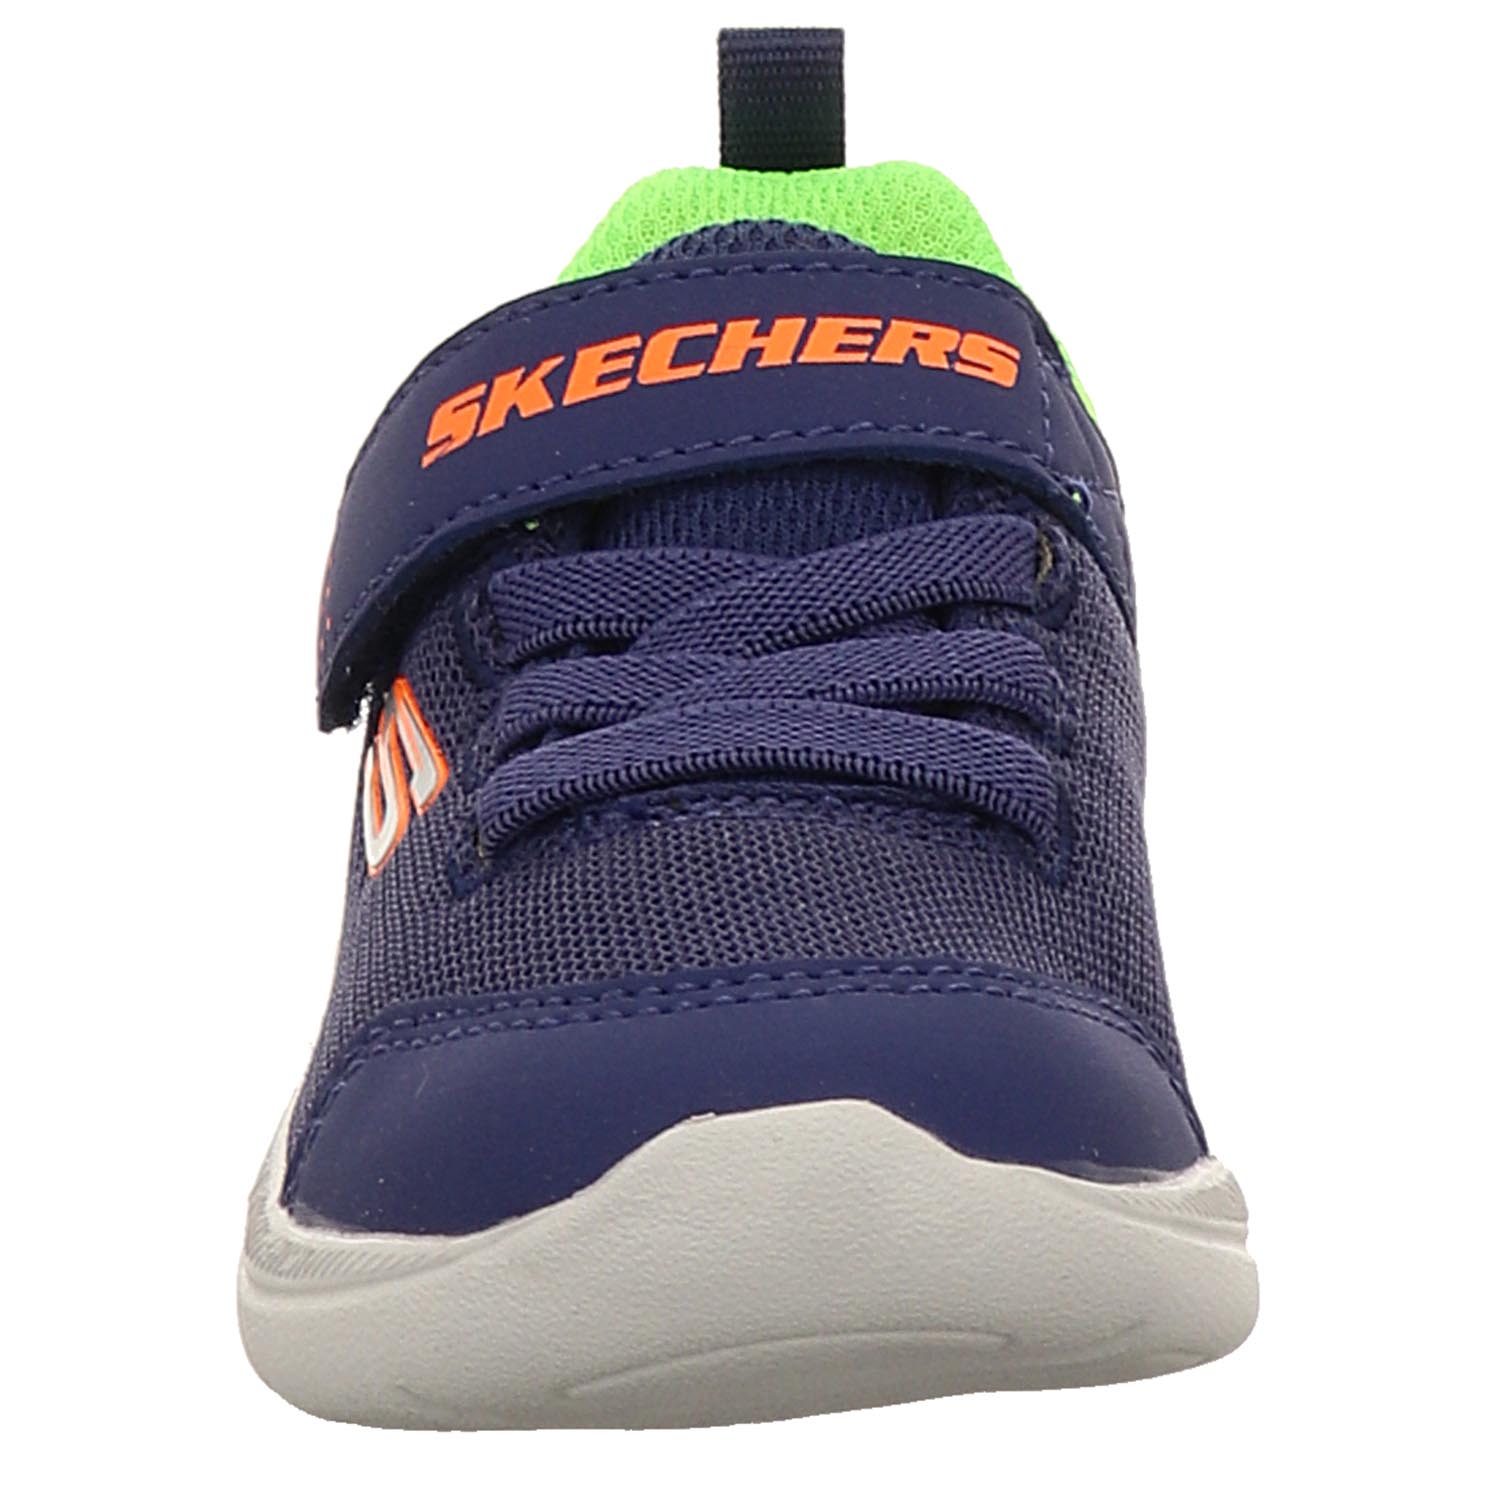 Skechers SKECH STEPZ 2.0 MINI WANDERER Sneakers Baby Kinder 407300N/NVLM blau